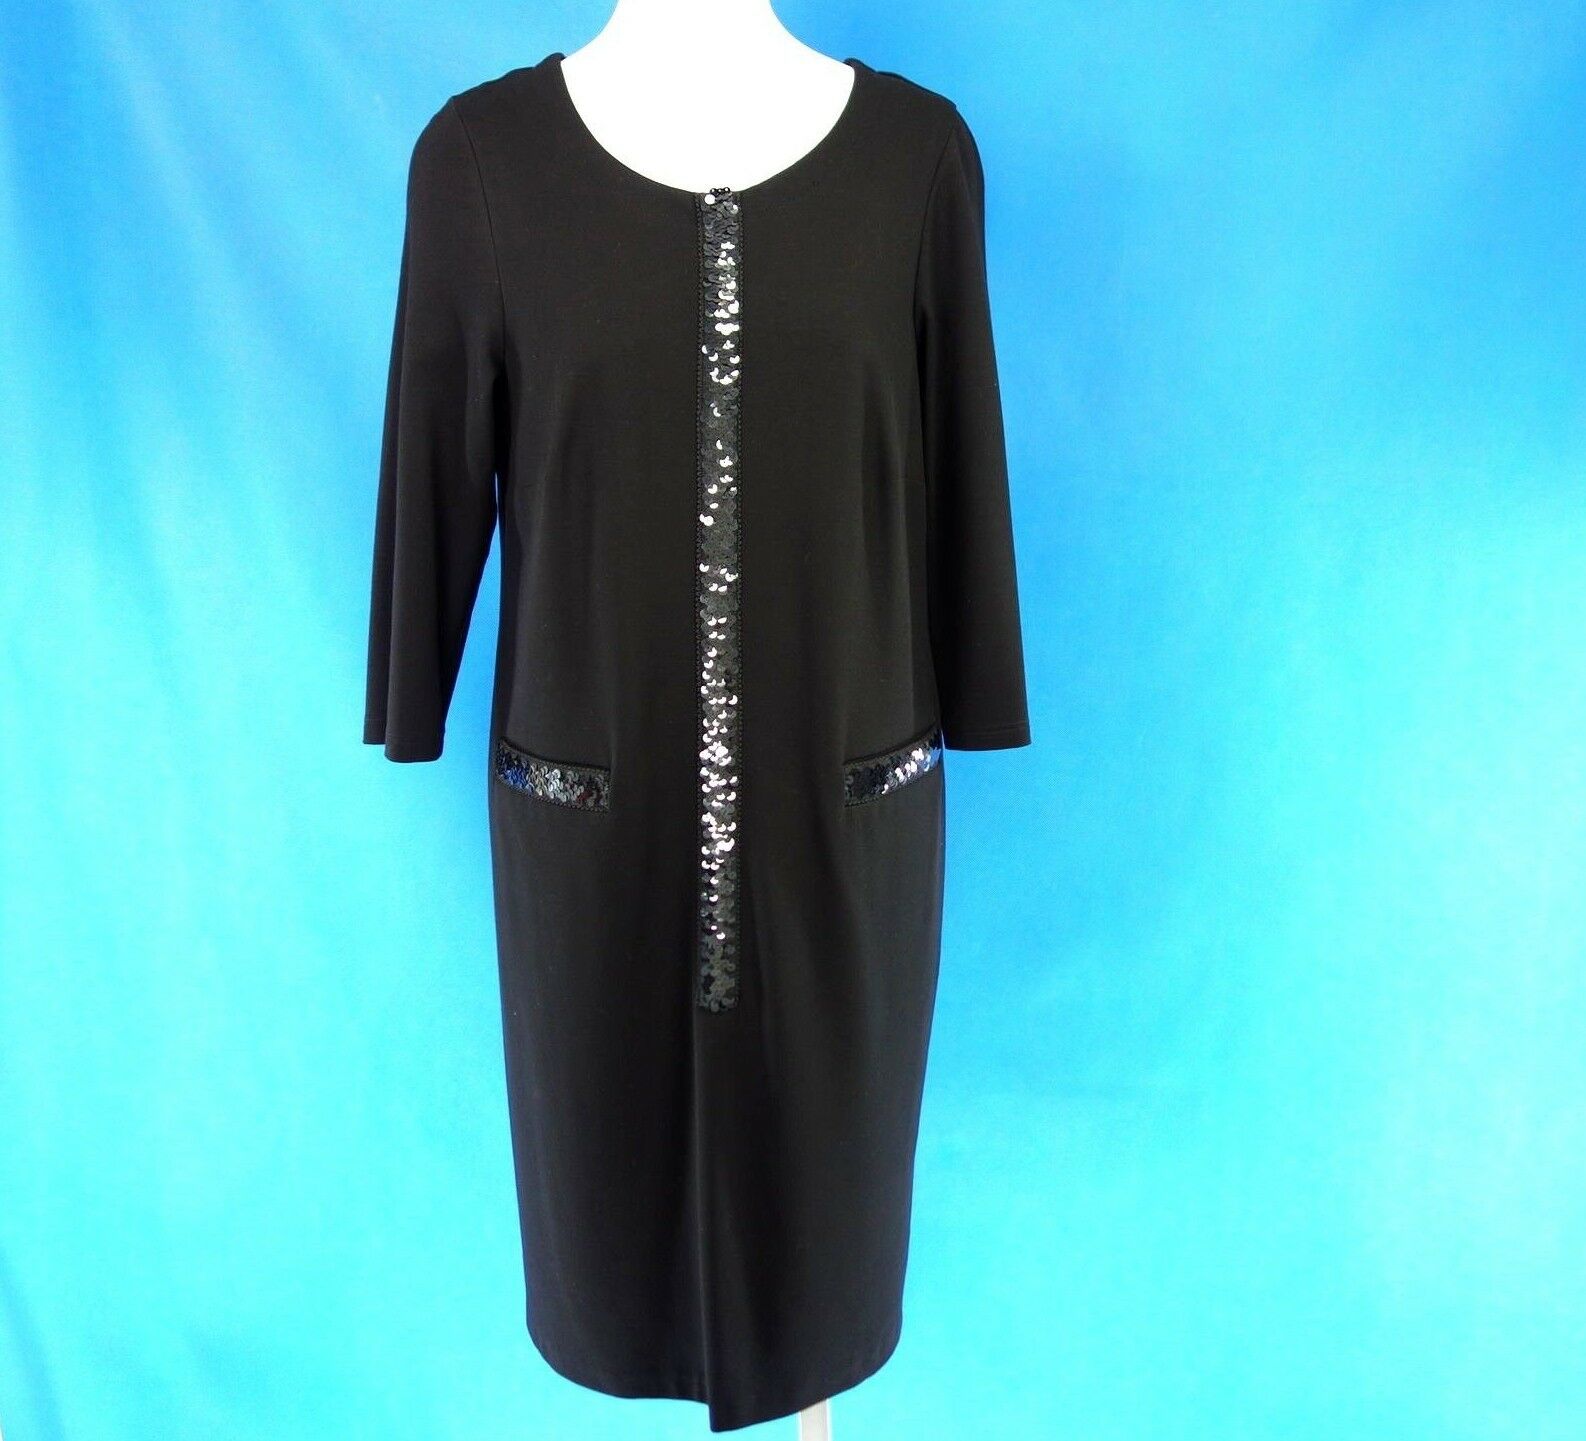 Vabene Damen Kleid Etuikleid Größe 42 XL Schwarz Pailletten Festlich Np 179 Neu - 42